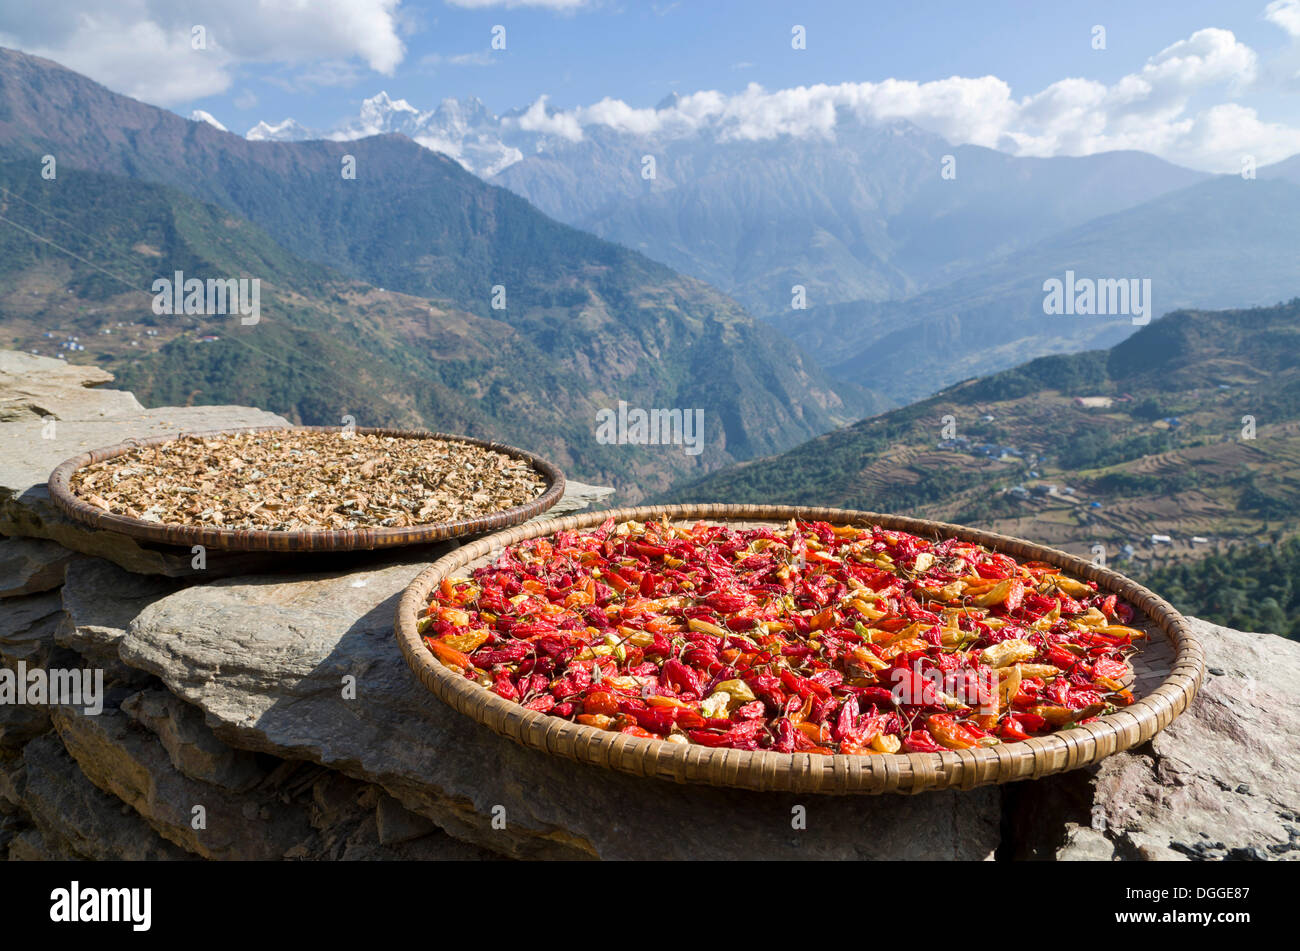 Rote Chilischoten auf einer Holzplatte trocknen in der Sonne, Taksindu, Solukhumbu Bezirk, Sagarmāthā Zone, Nepal Stockfoto